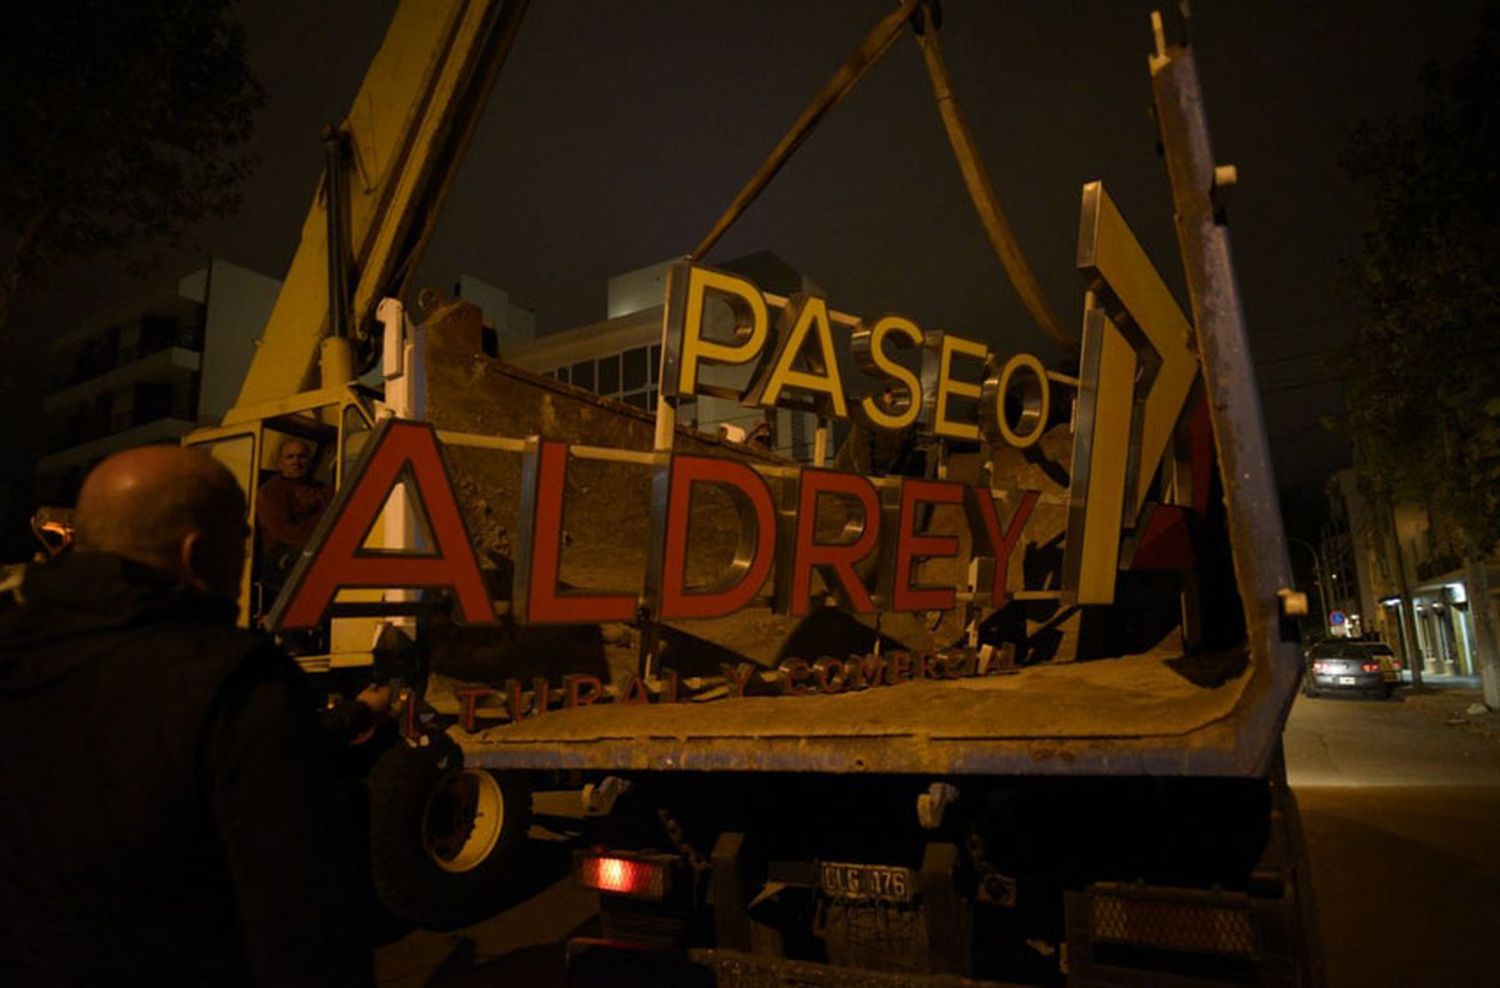 Arroyo bajó el cartel de "Paseo Aldrey" de la Estación Terminal Sur